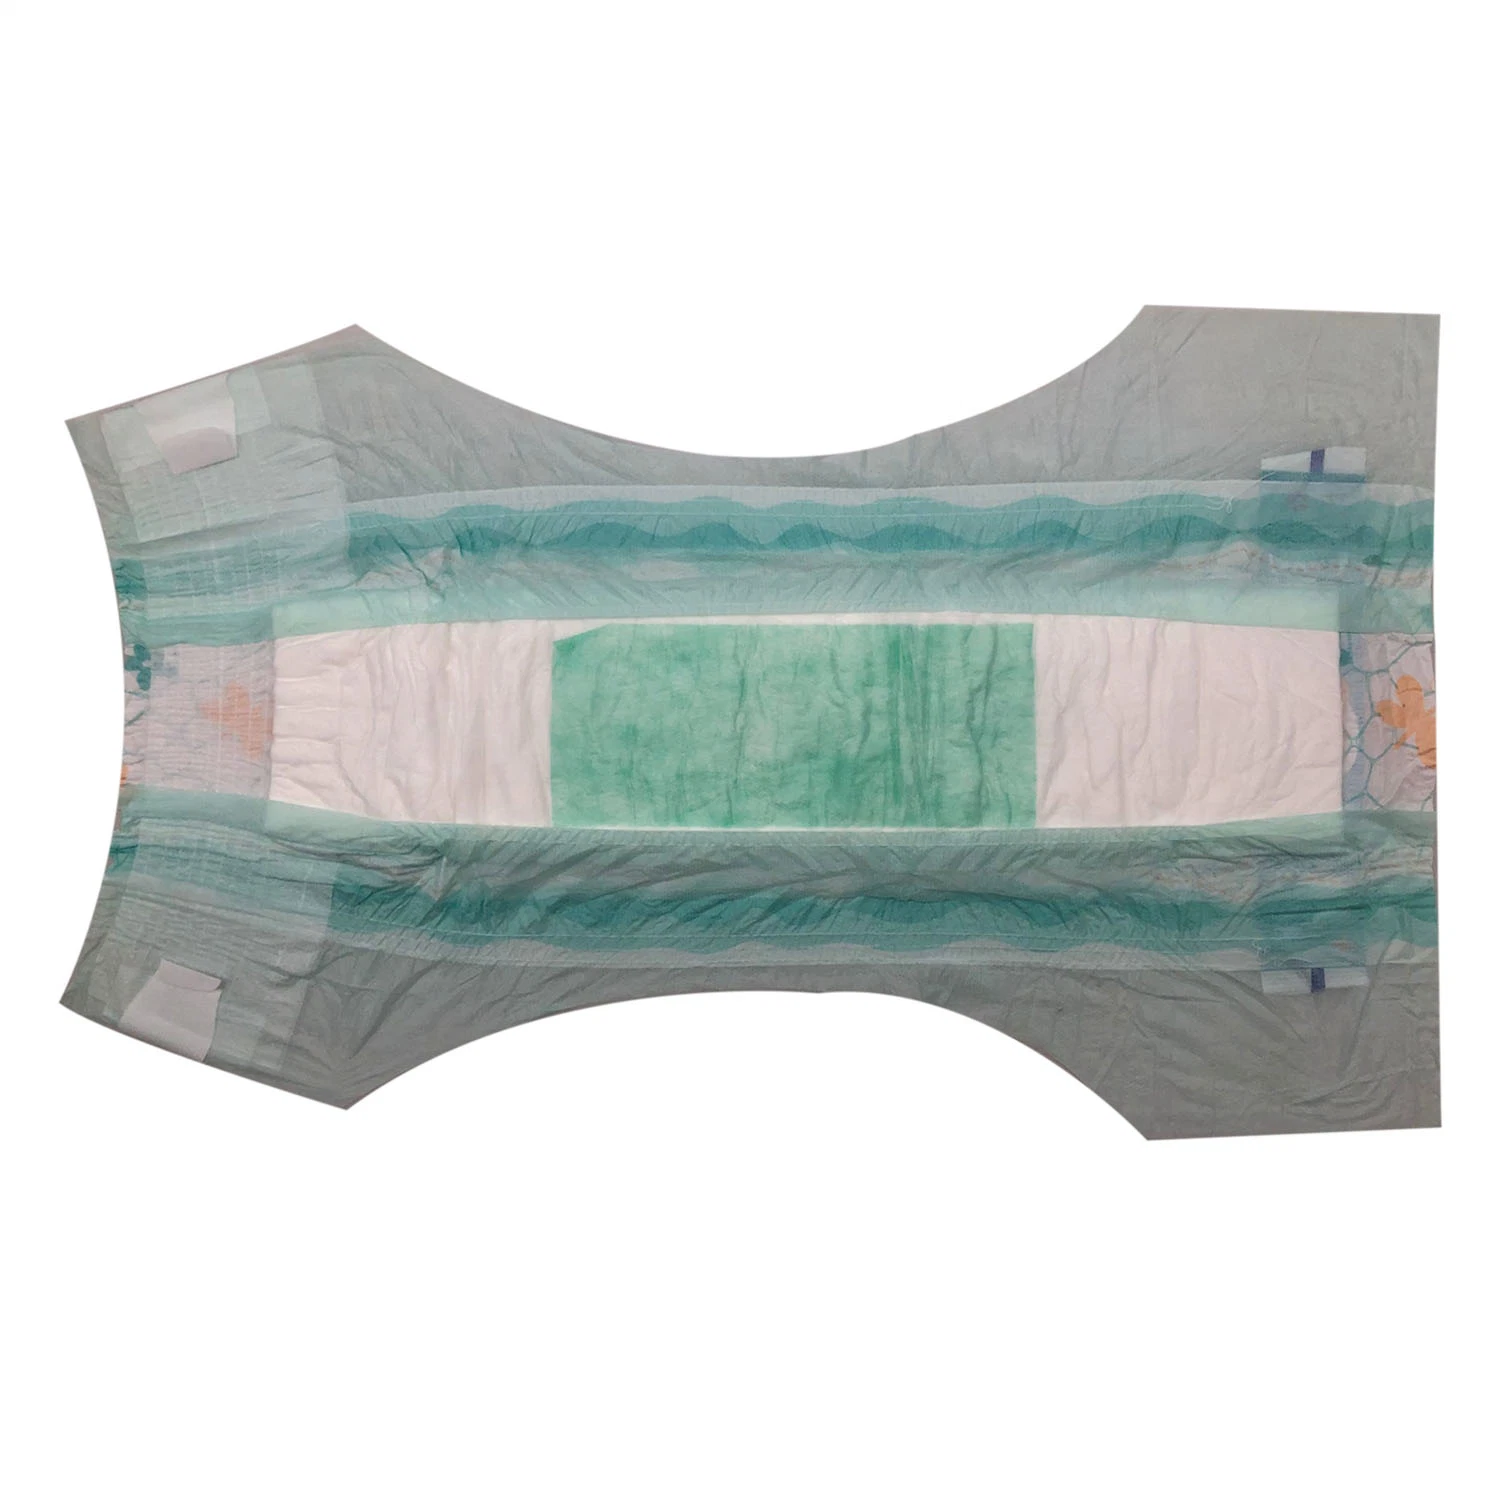 Китай Продукты/Поставщики Premium Quality Baby Care Baby Diaper Soft and Дышащие высокосорбционные детские подгузники